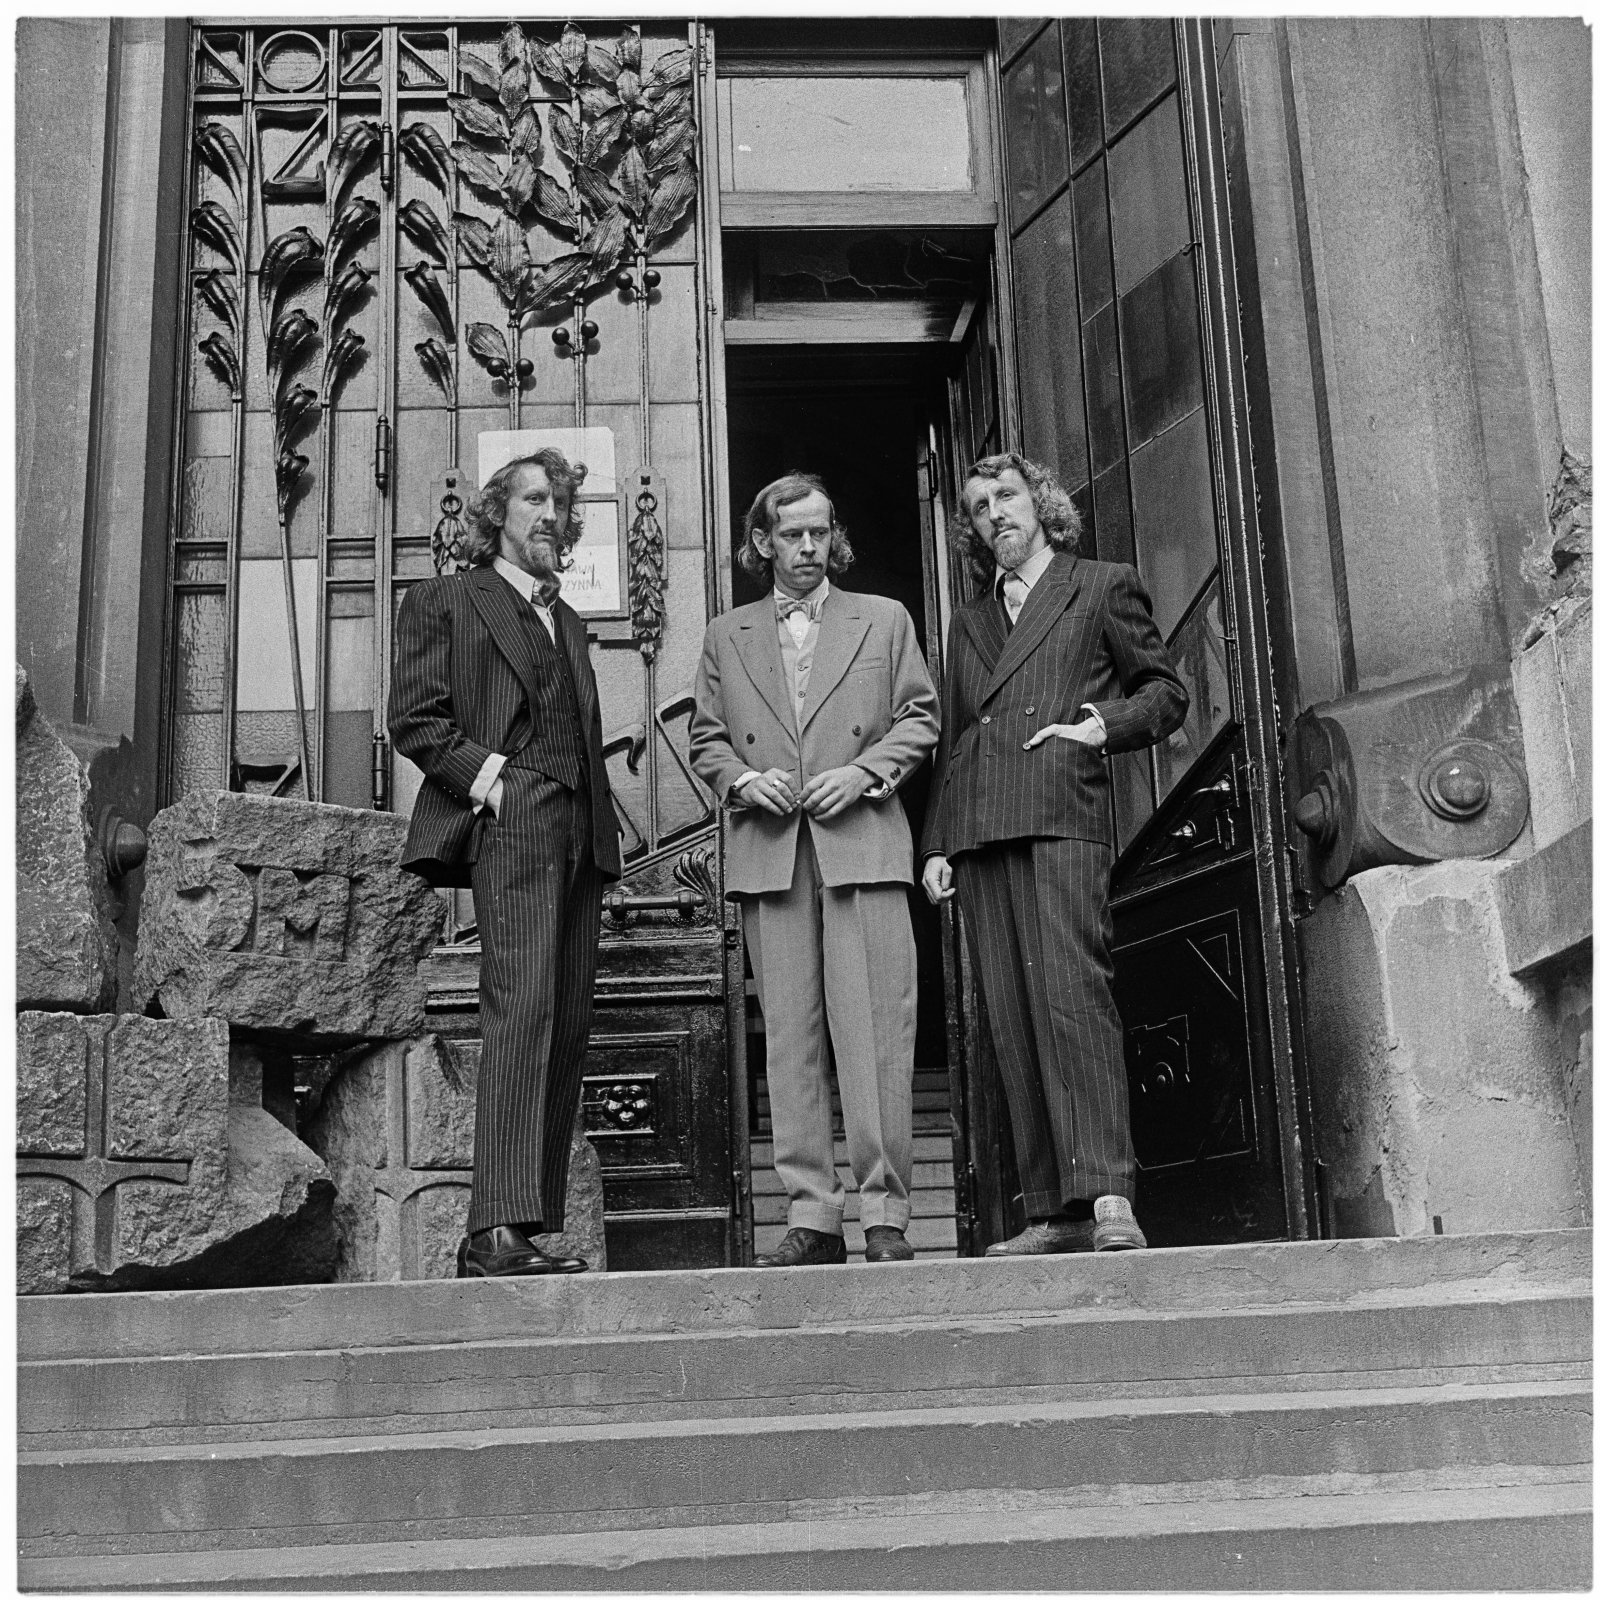 Archiwalne zdjęcie; trzech mężczyzn stoi przed wielkimi drzwiami do budynku